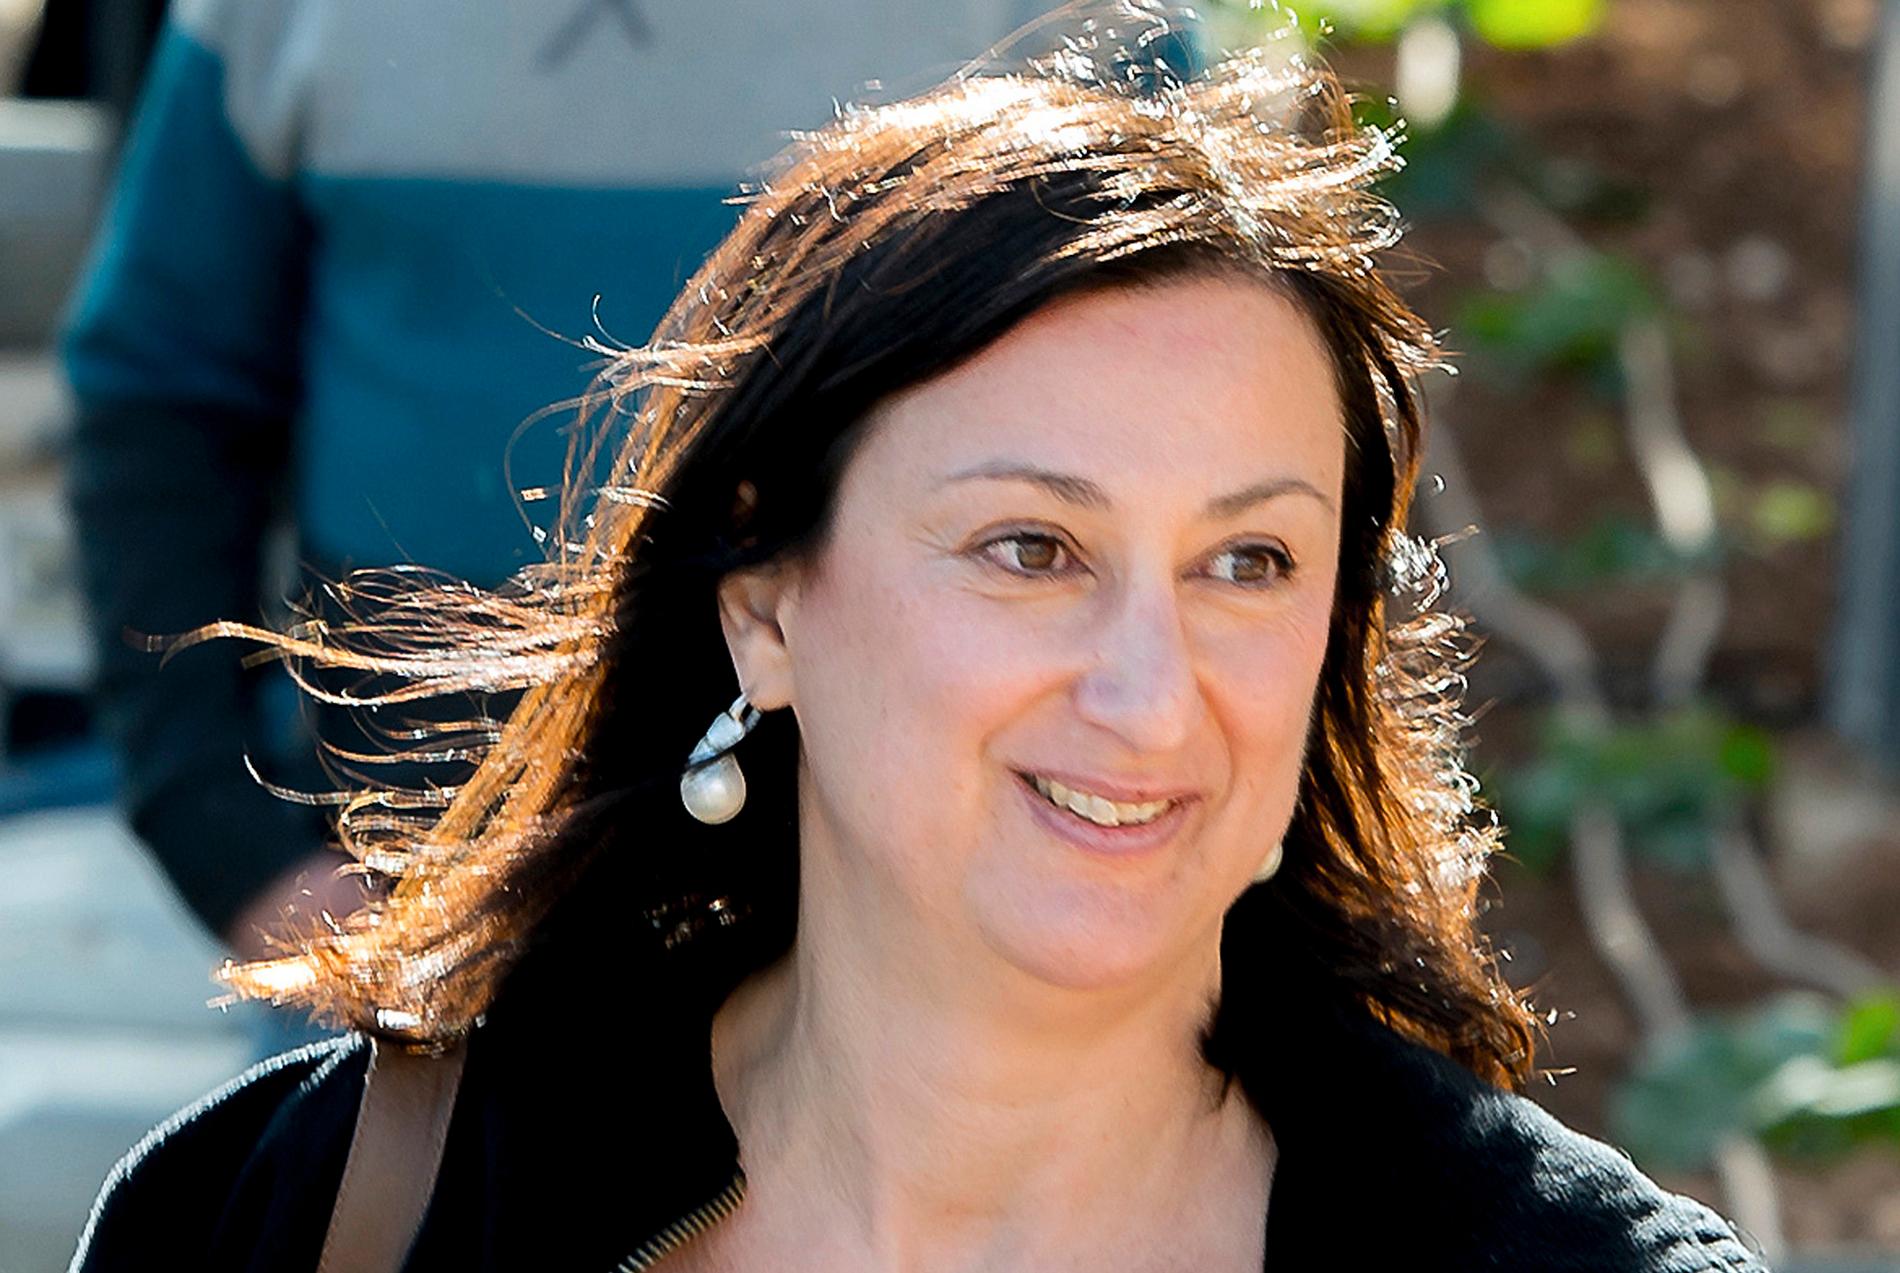 Mordet på den grävande journalisten Daphne Caruana Galizia på Malta kan vara på väg att lösas. Arkivbild